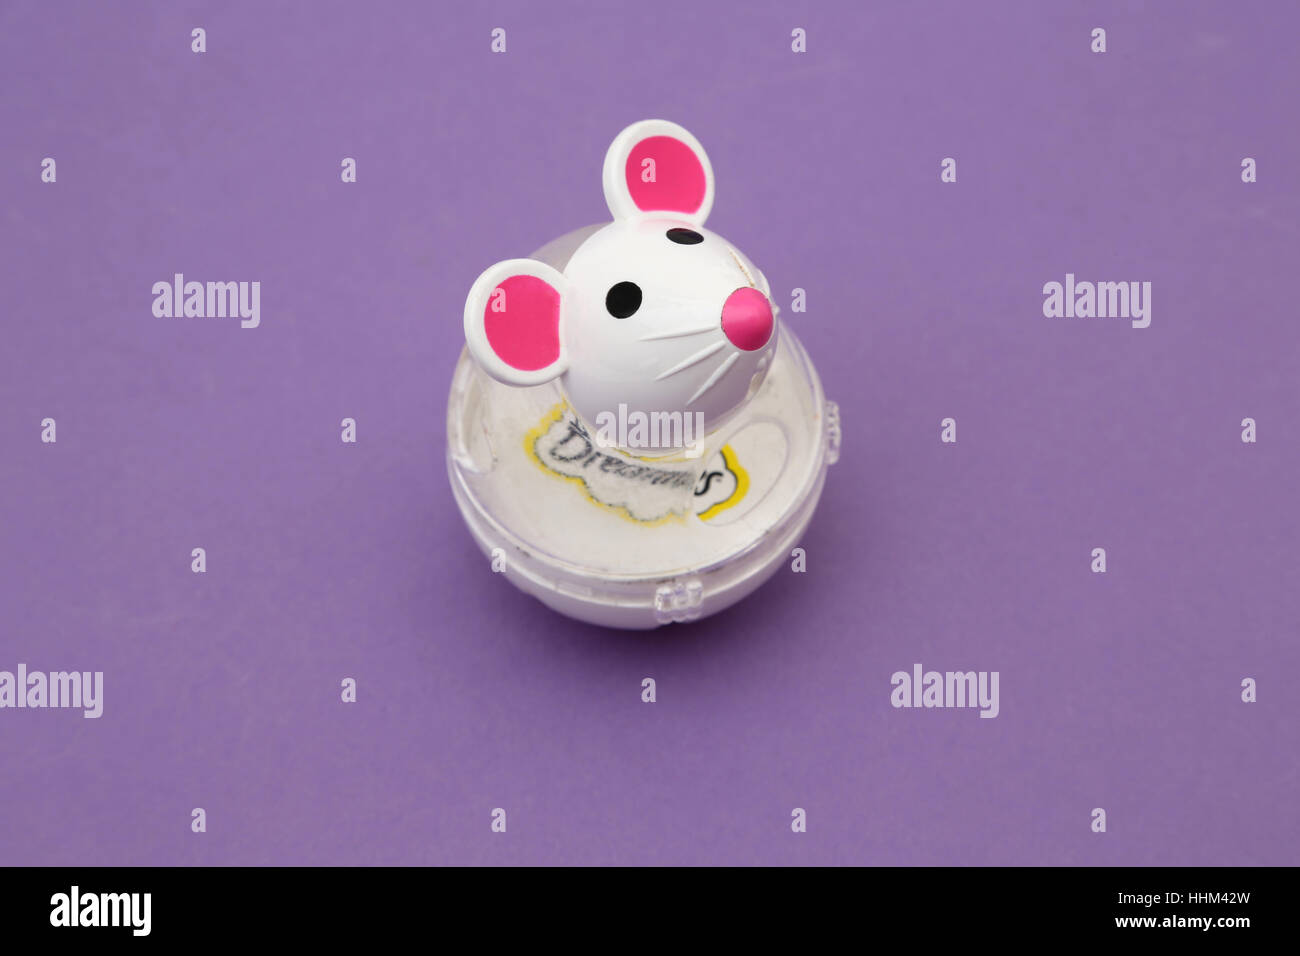 Katzenspielzeug Maus Dreamies behandeln Stockfotografie - Alamy